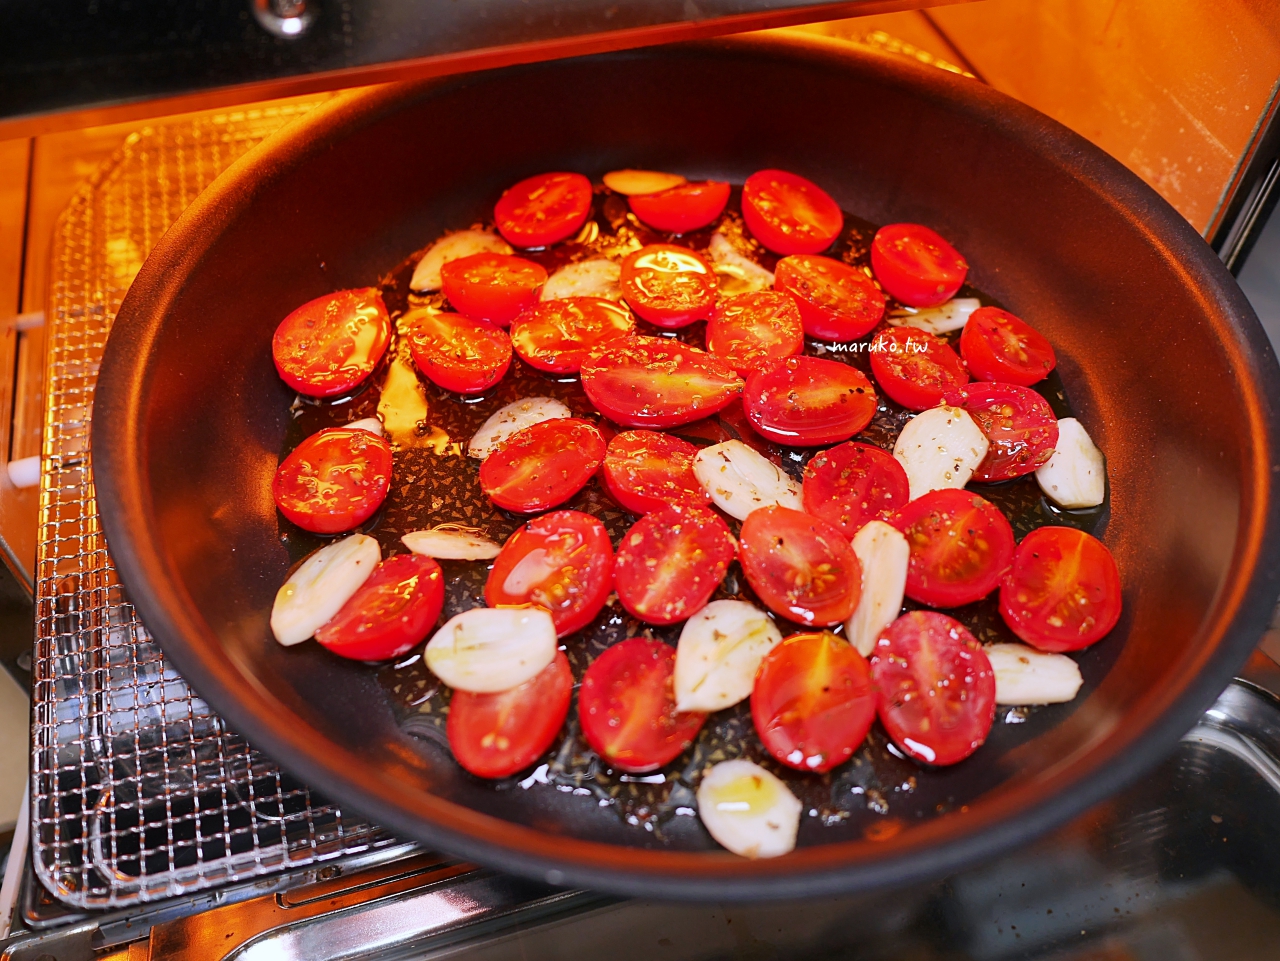 【食譜】油漬番茄 只要三步驟輕鬆做義式橄欖油番茄 配麵包或義大利麵都適合 @Maruko與美食有個約會